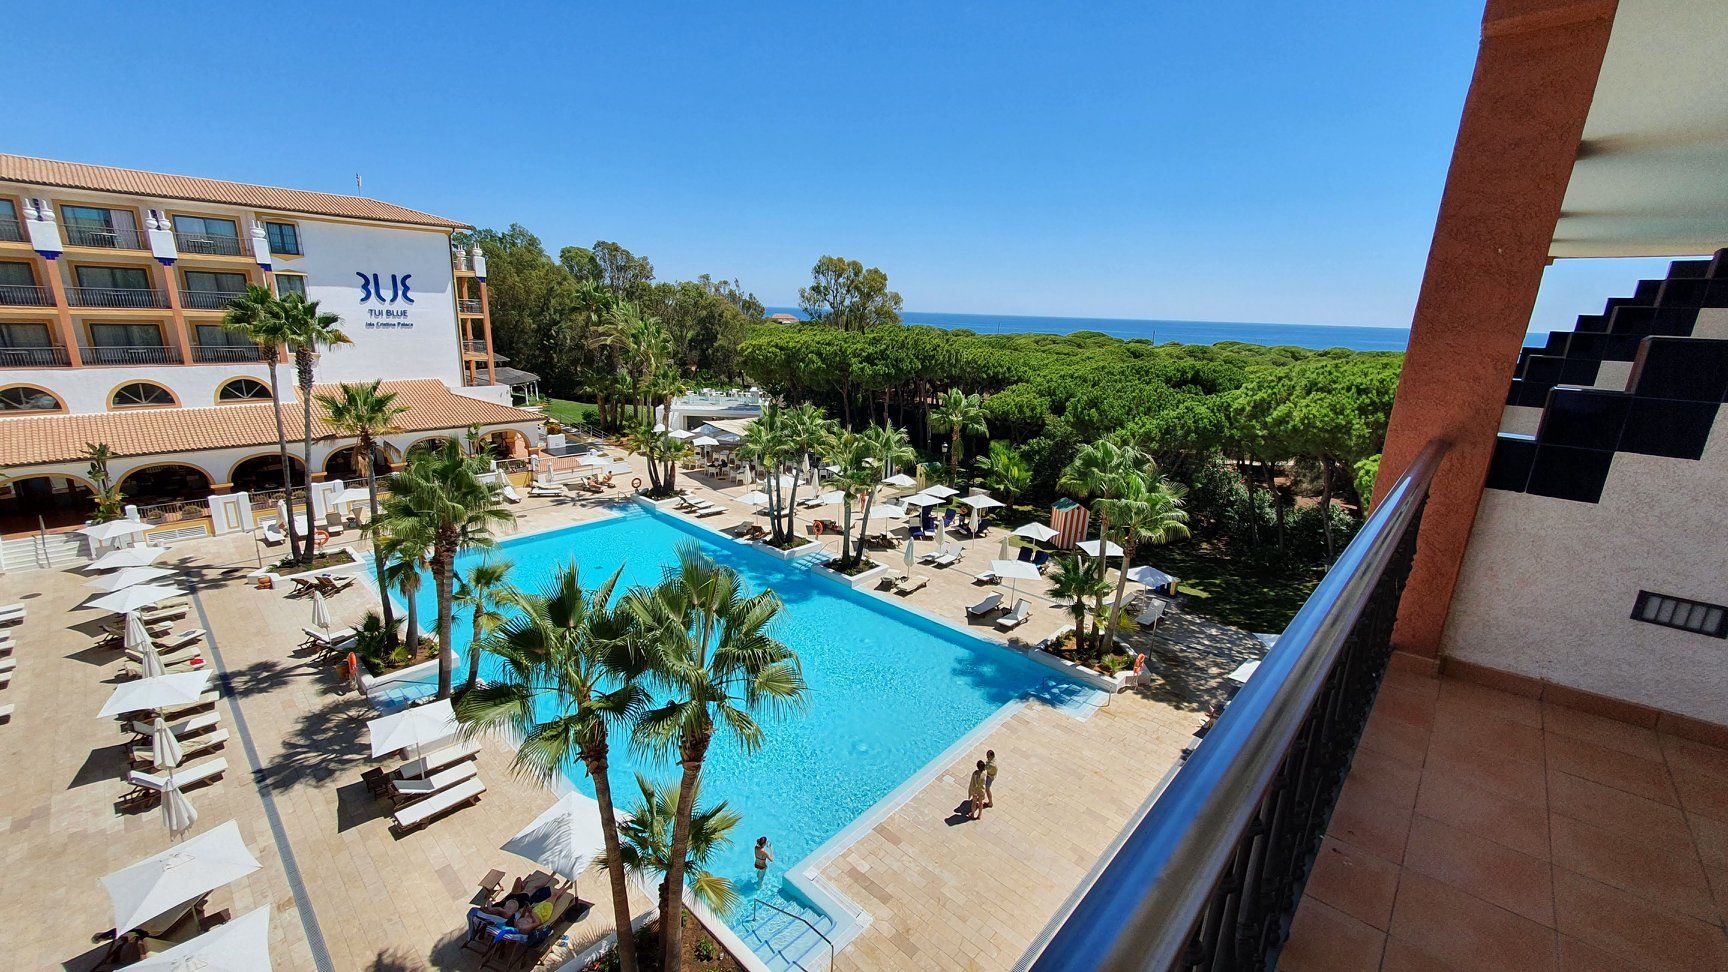 Imagen del hotel TUI Blue de Isla Cristina.